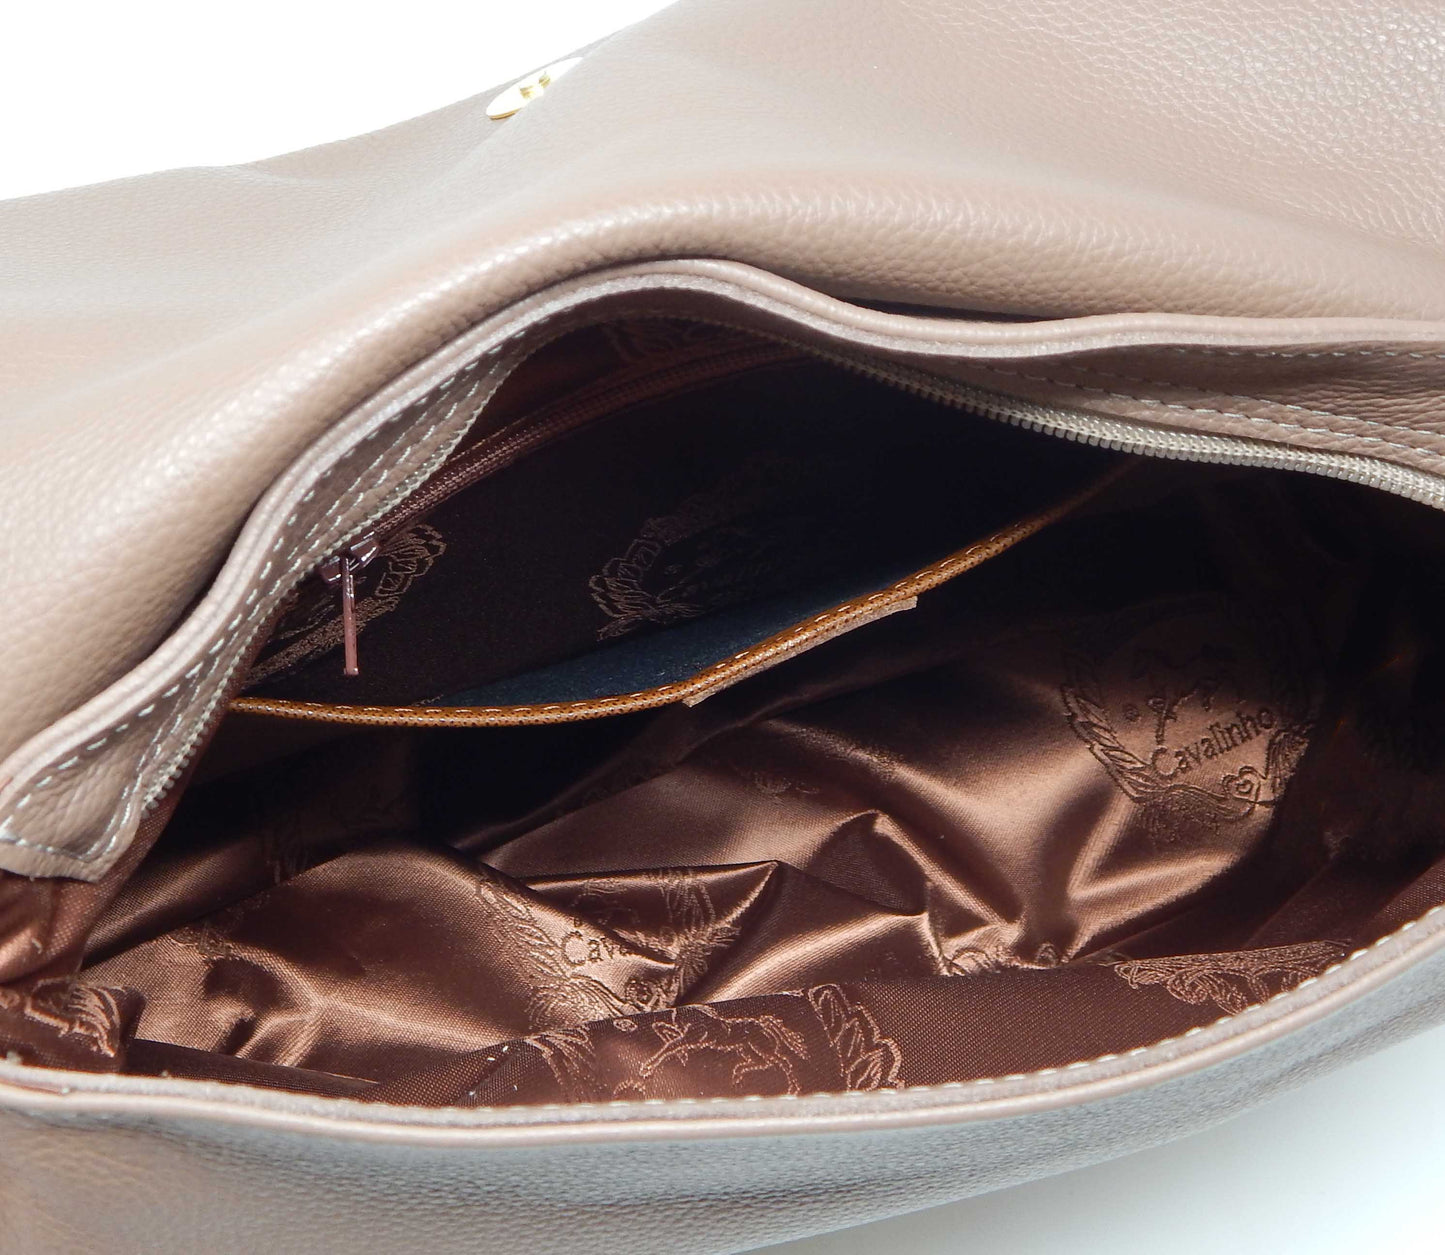 Cavalinho Muse Leather Shoulder Bag - Sand - inside_0369